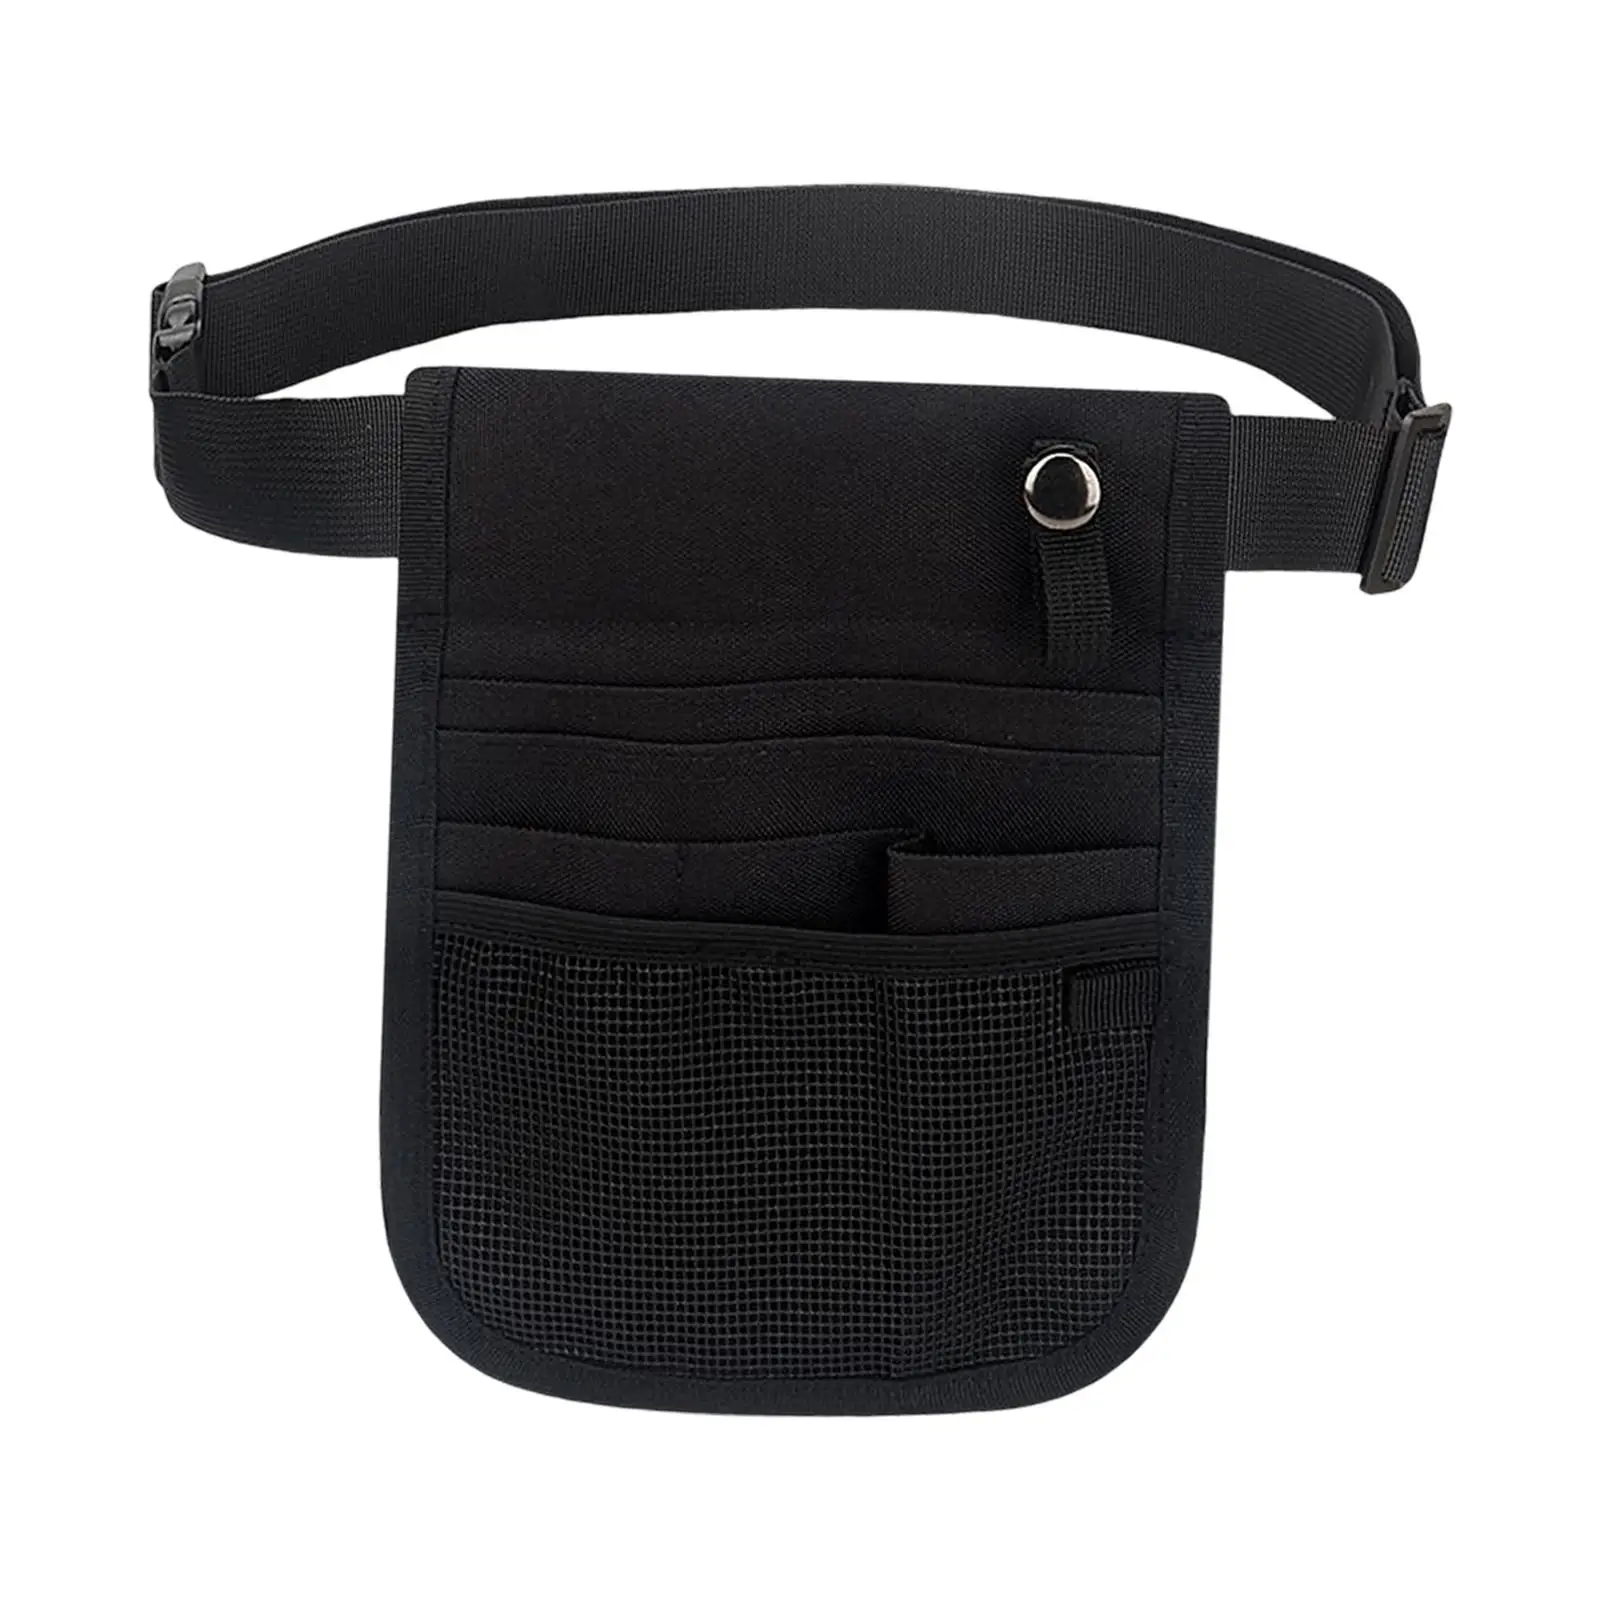 Practical Nurse Organizer Belt Waist Bag Utility Hip Bag Case Nursing Bag Storage Holder Multiple Pocket Fanny Pack Supplies